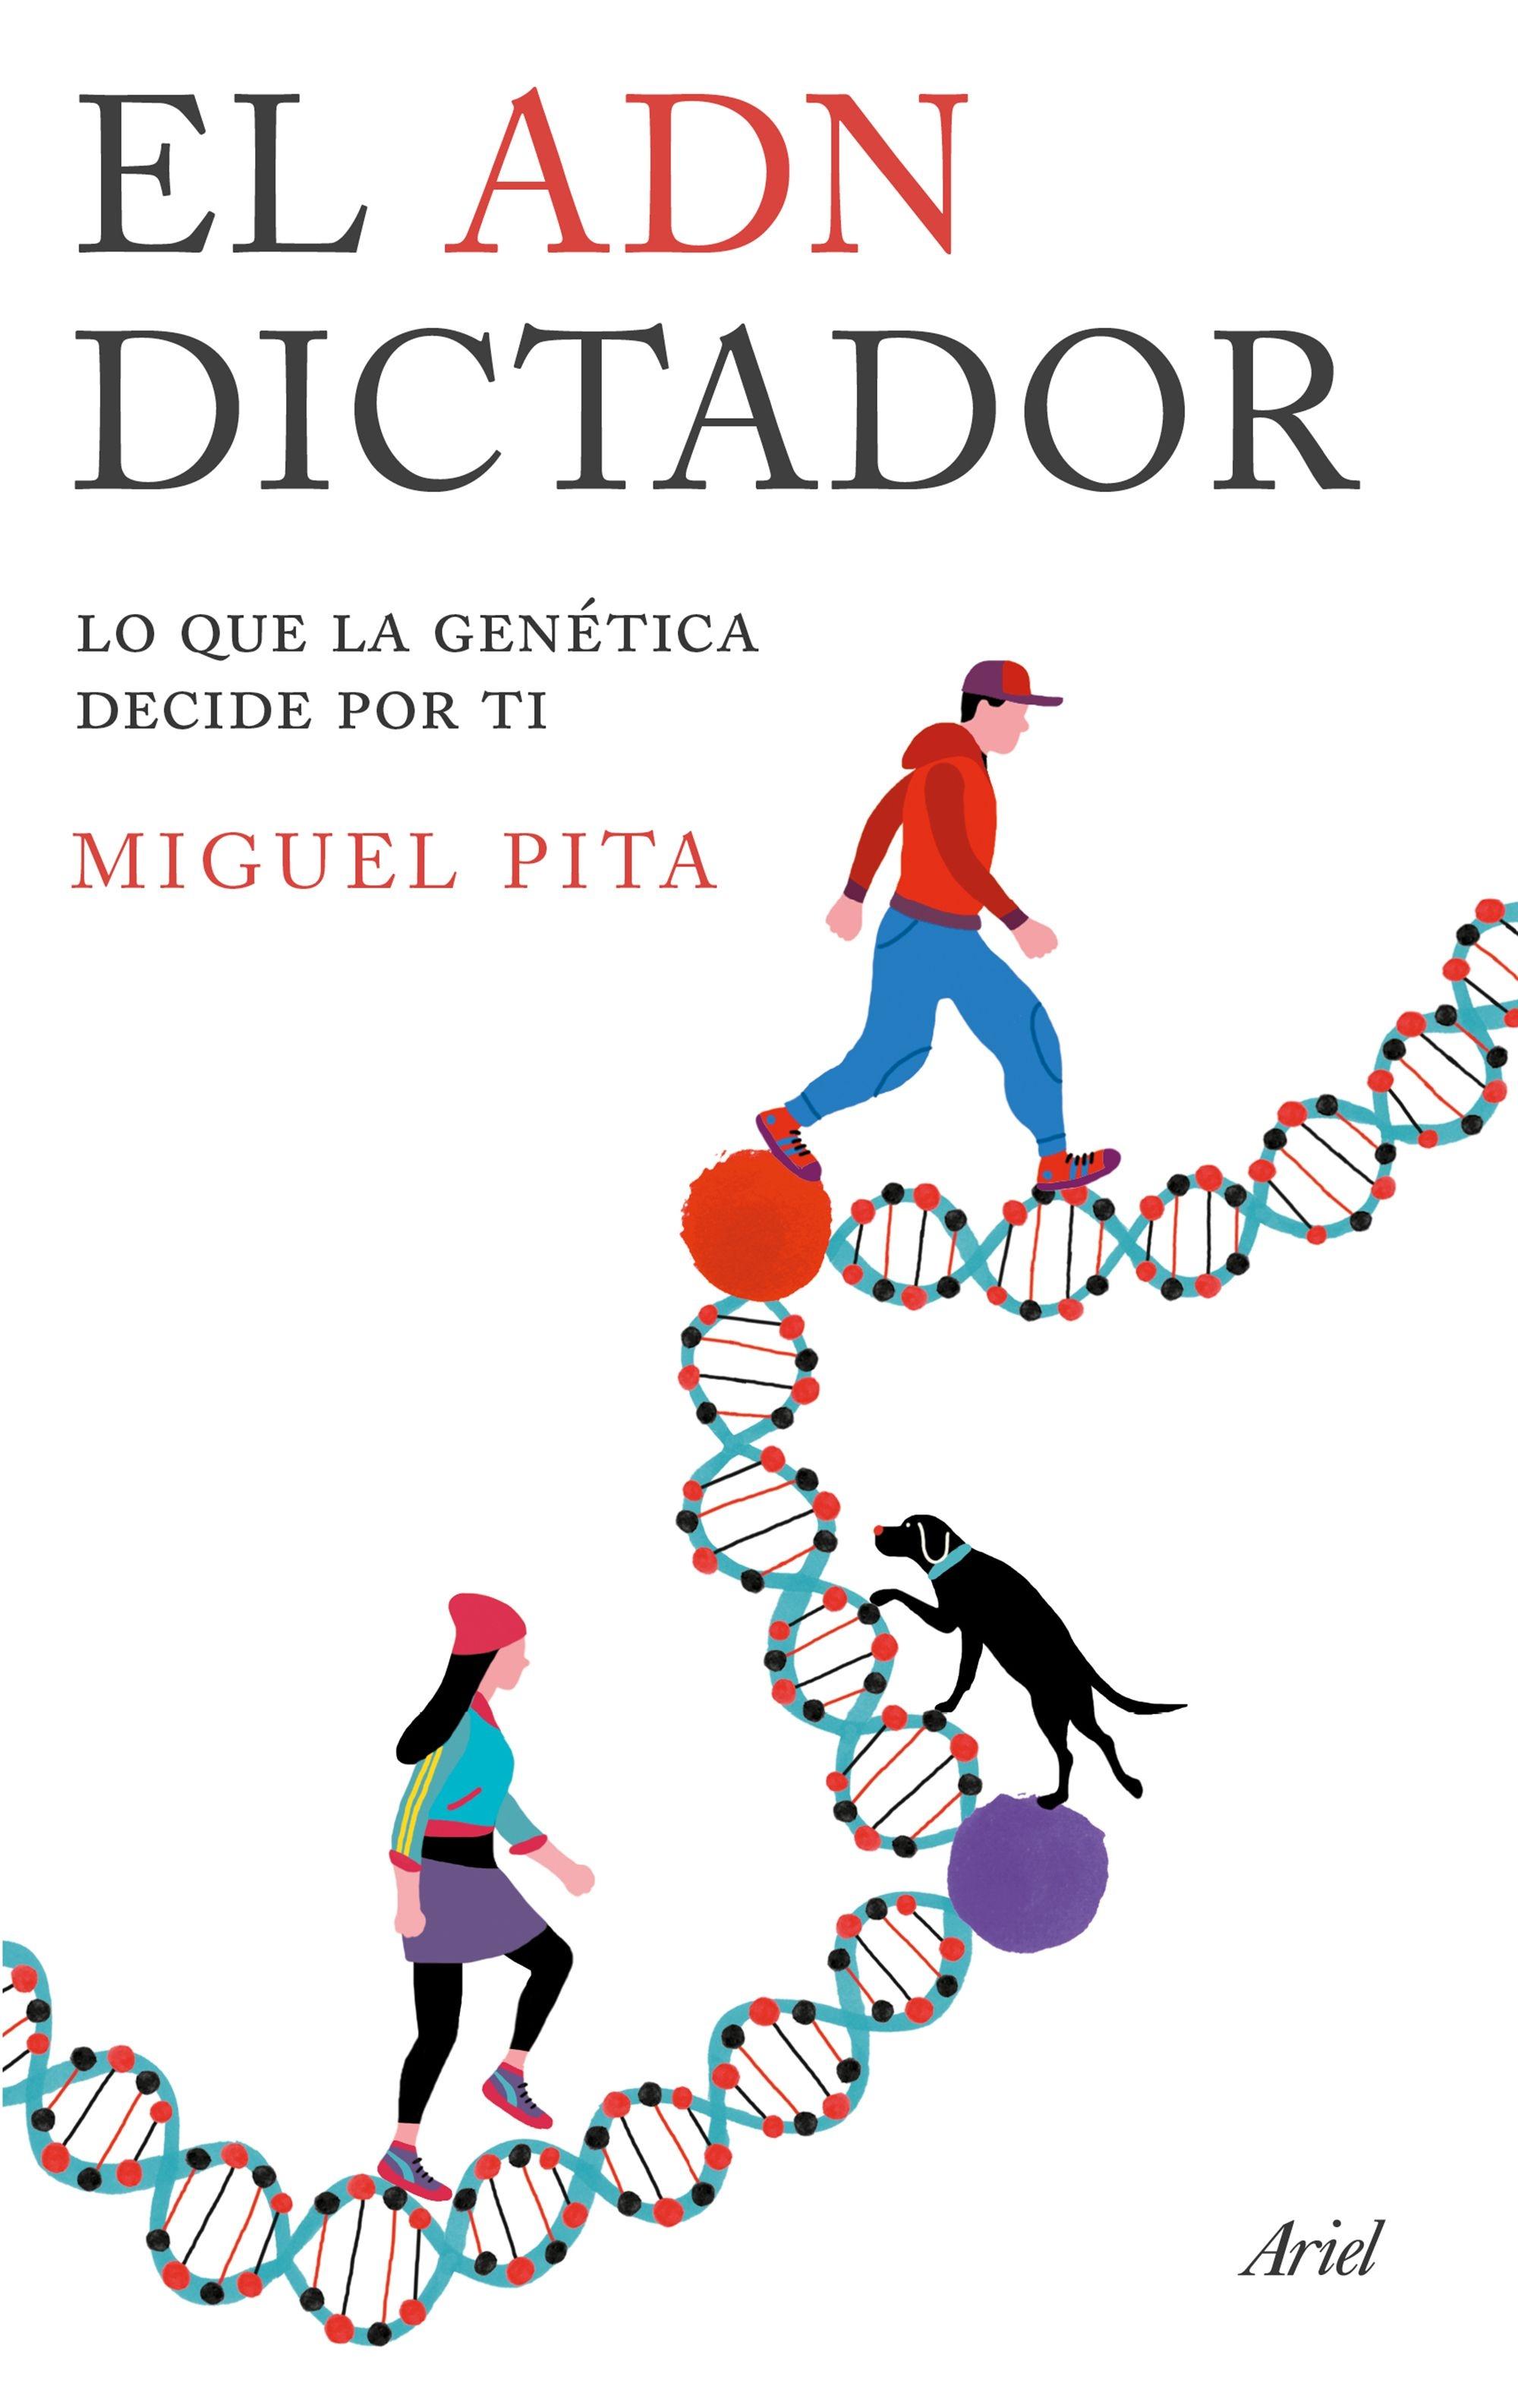 ADN DICTADOR, EL "LO QUE LA GENÉTICA DECIDE POR TI". 